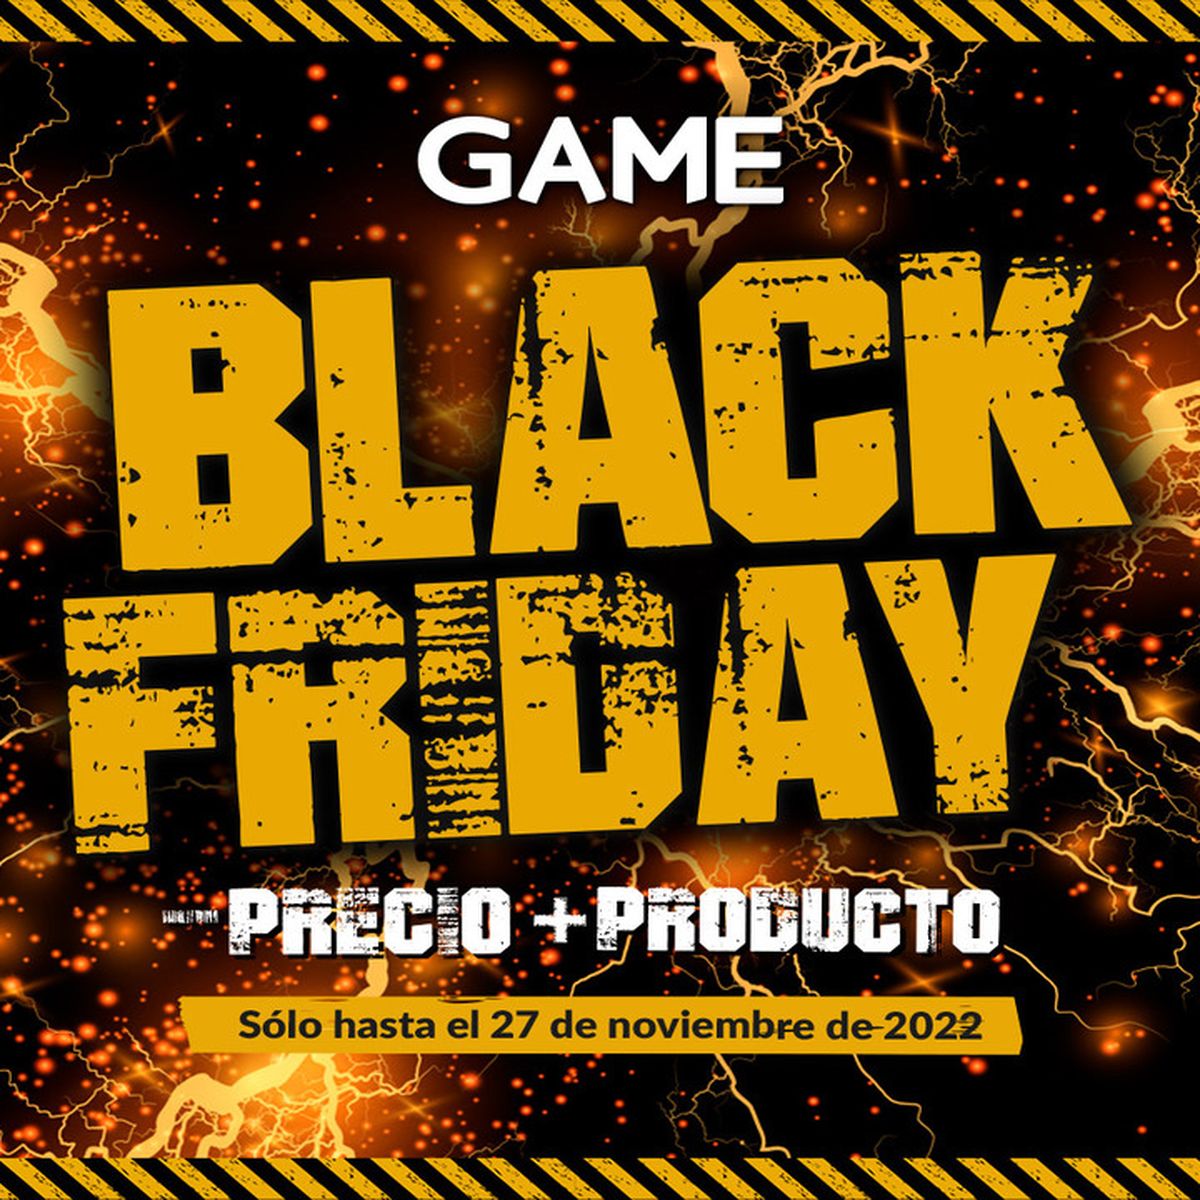 PS4 - Promoção de Black Friday!!!! - Videogames - Vila Mury, Volta Redonda  1252119896